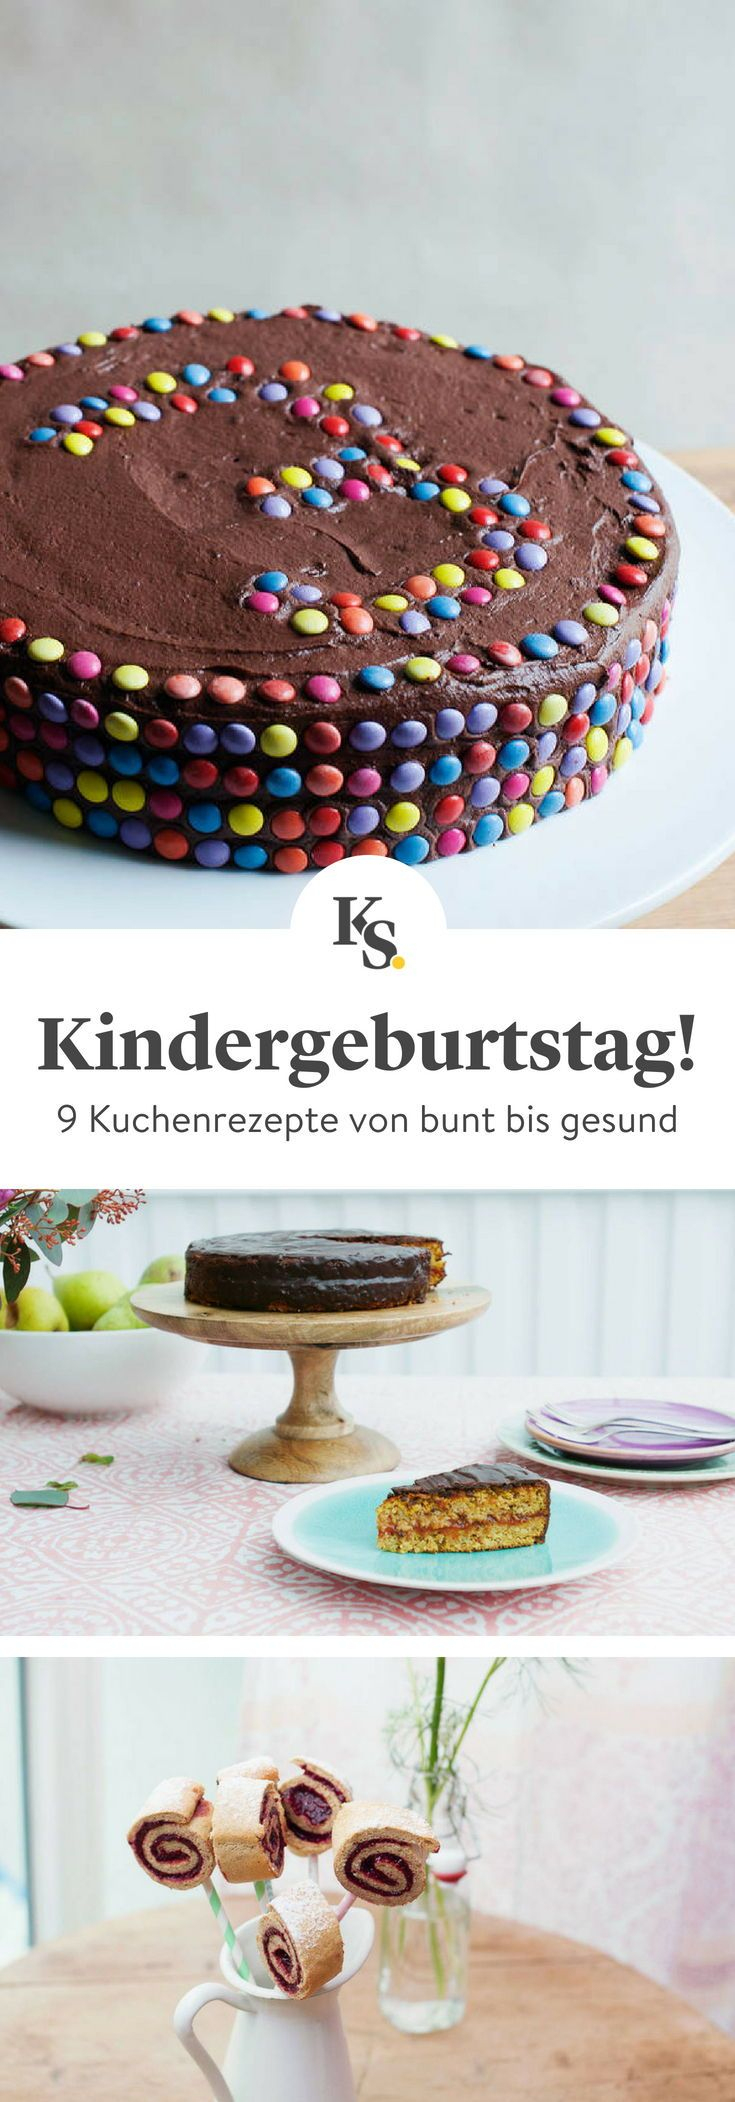 9 Köstliche Kuchen Für Kindergeburtstage | Kuchen für Kuchenrezepte Kindergeburtstag